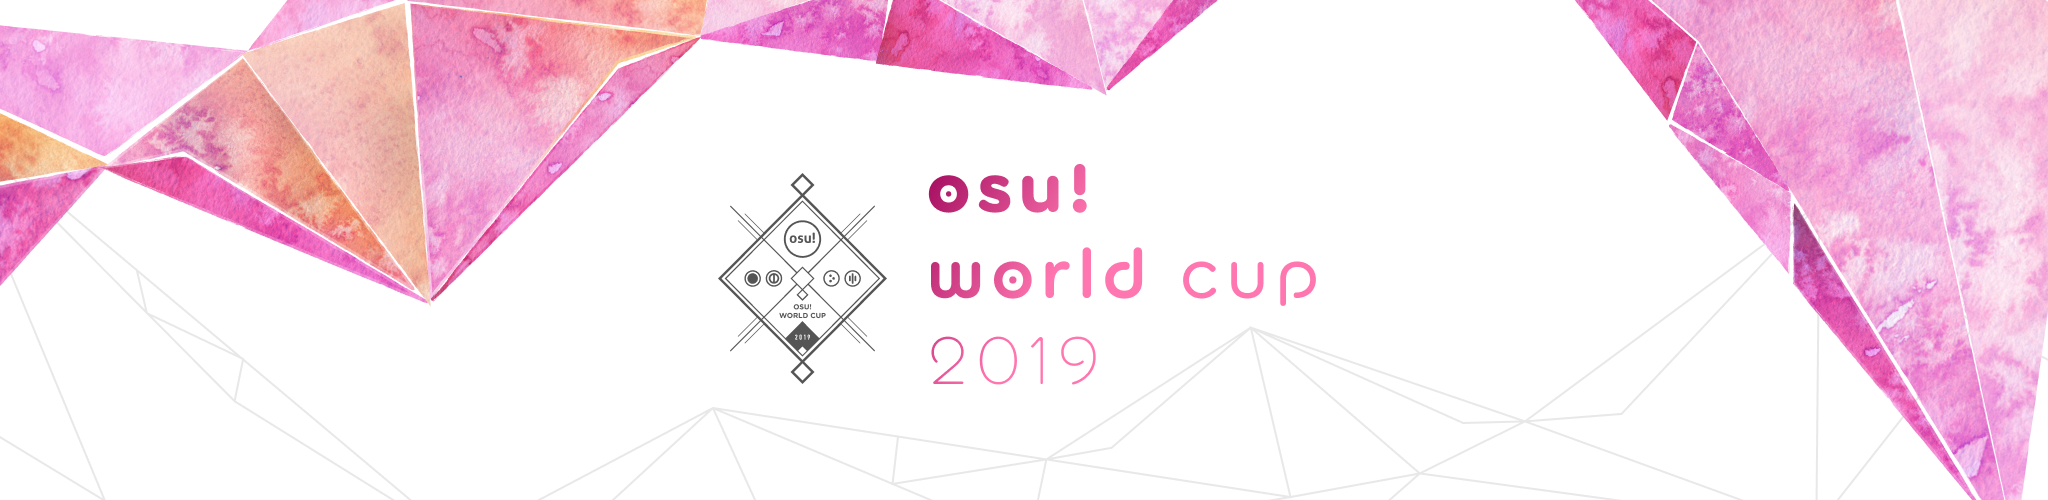 【osu!大会】 OWC 2019 結果